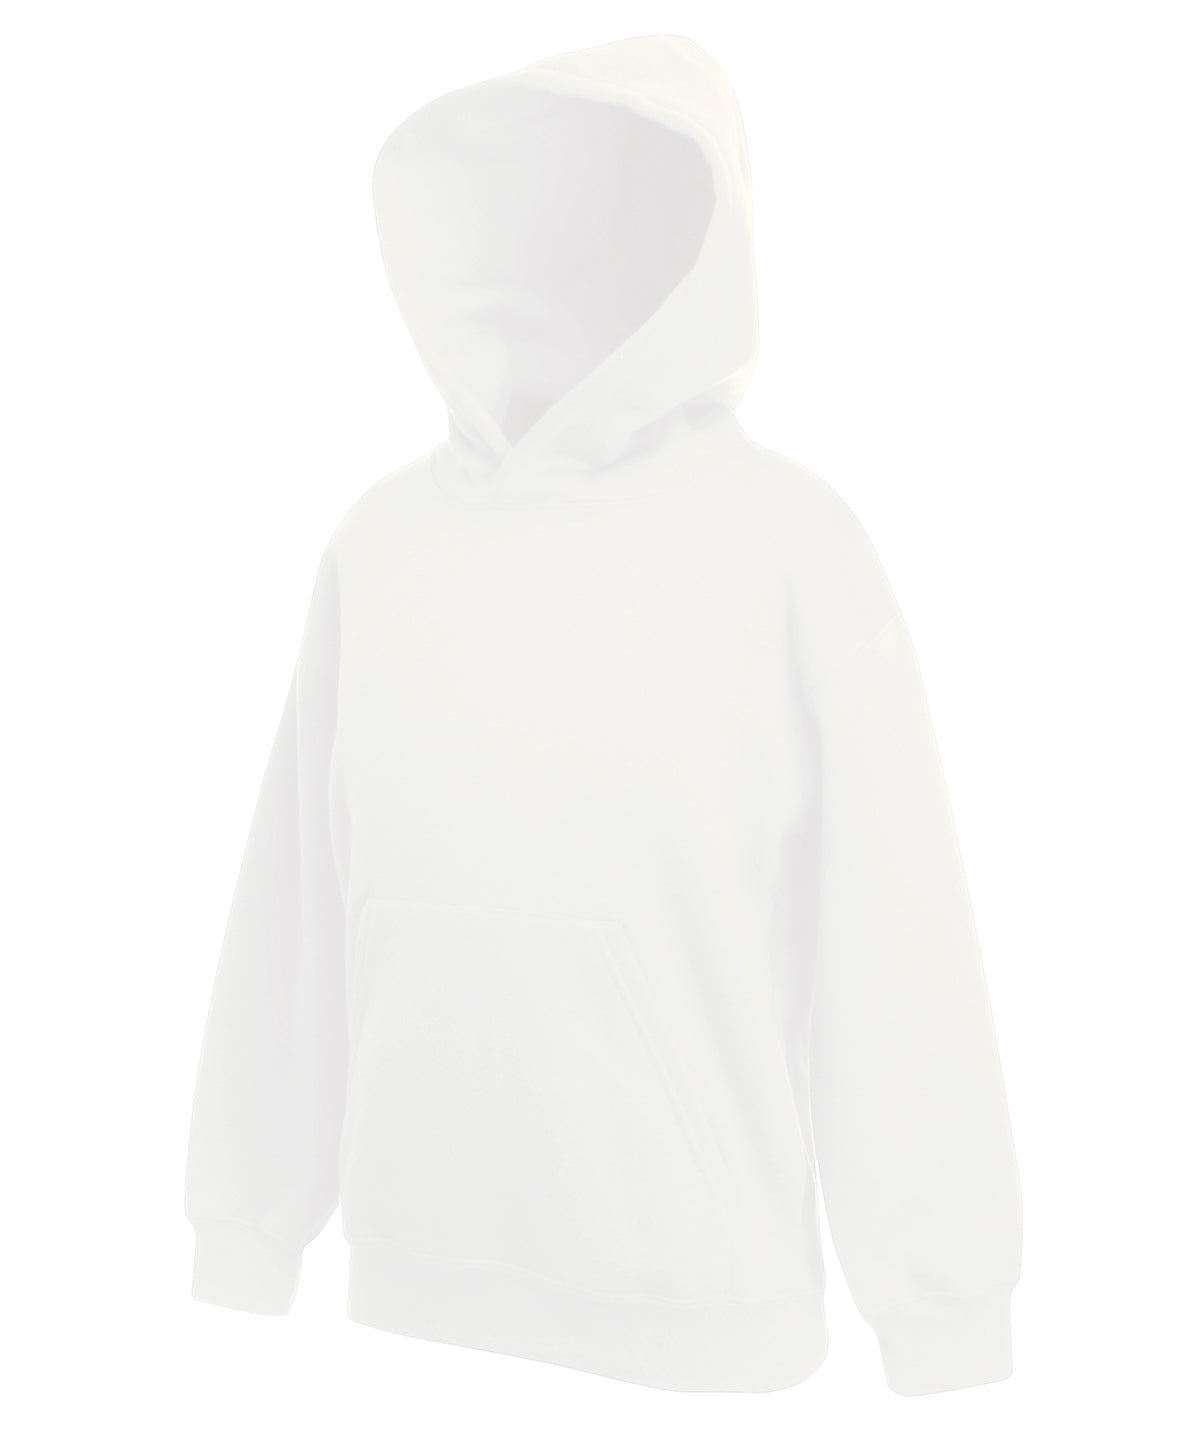 Hettupeysur - Kids Premium Hooded Sweatshirt